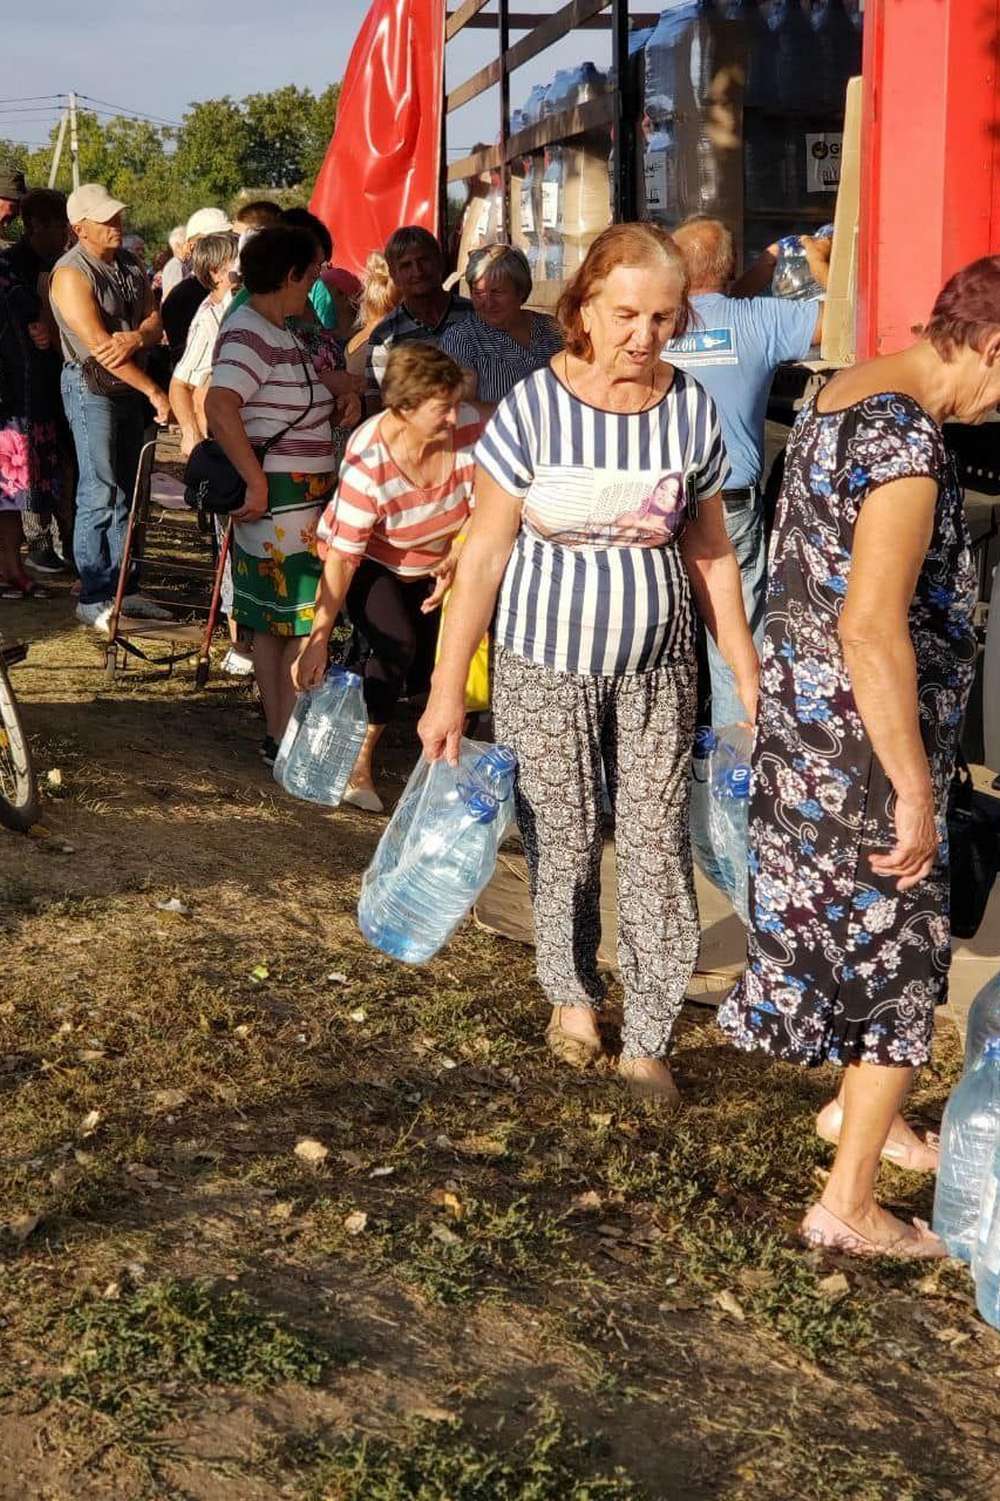 Скільки видали гуманітарки у Нікопольському районі на цьому тижні, розповів Євген Євтушенко